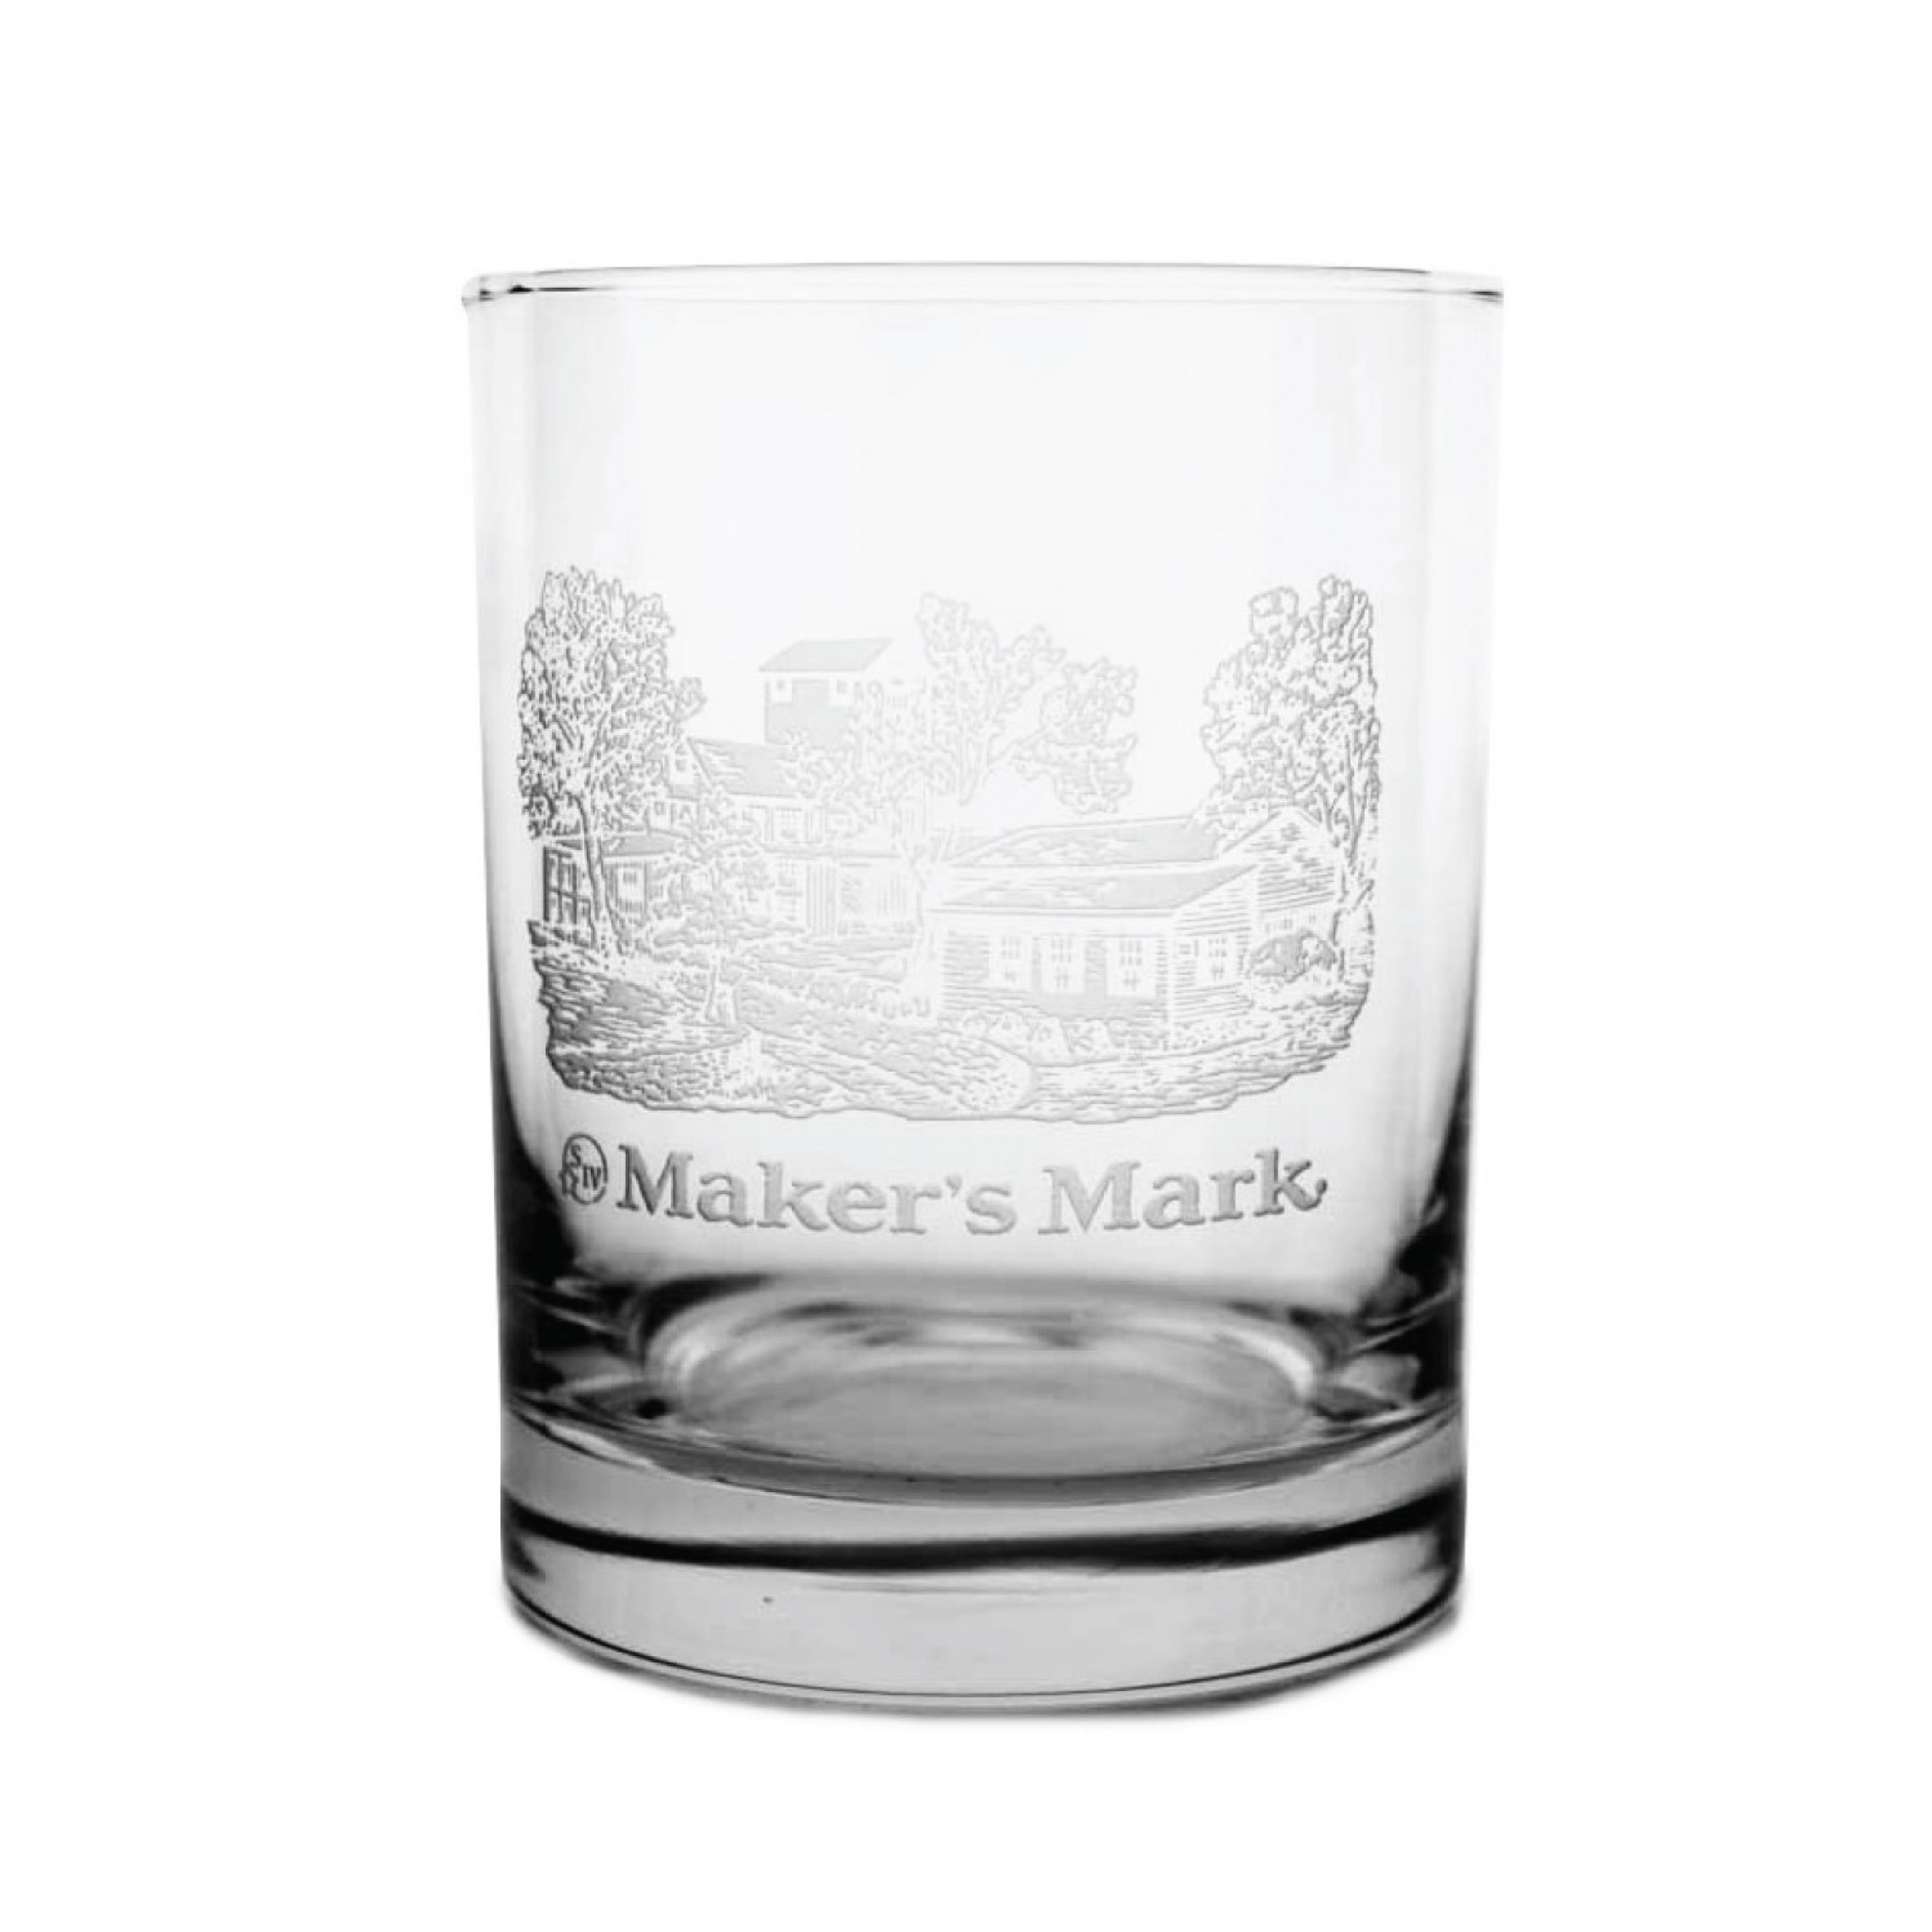 Maker's Mark Whiskey Distillery Image Glass